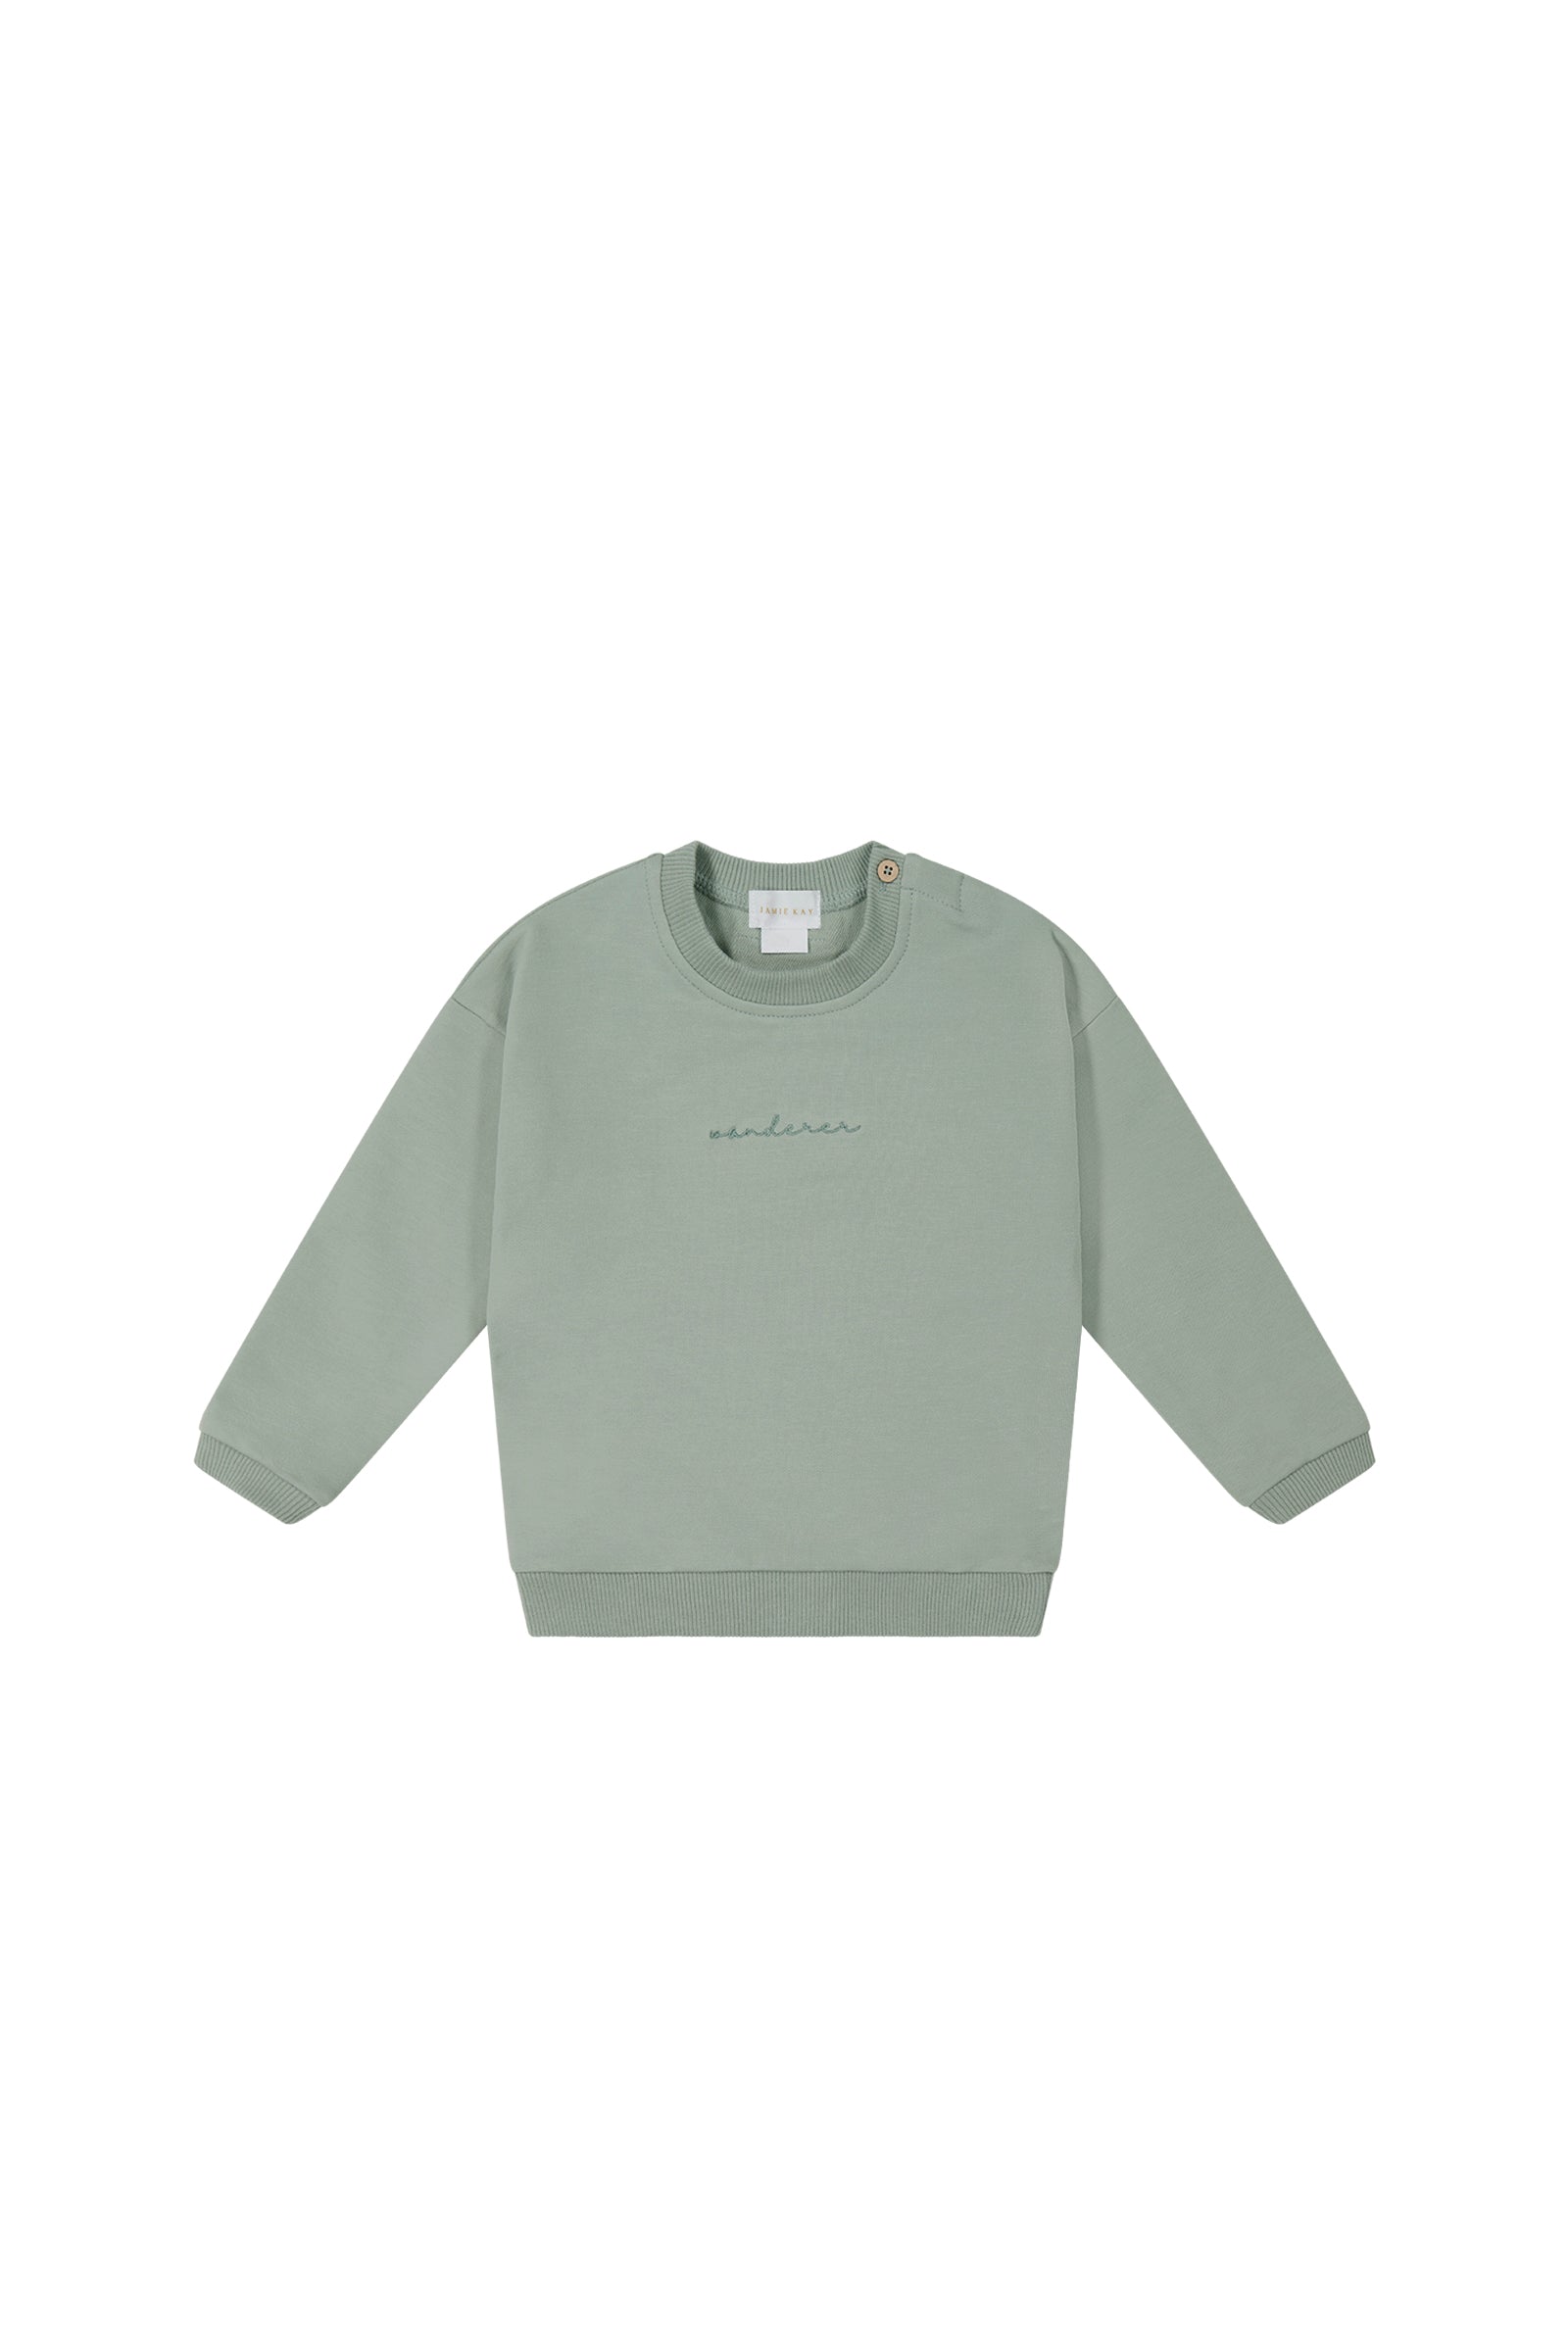 Jamie - Cotton Sweatshirt Asher – Beluga Kay Organic USA